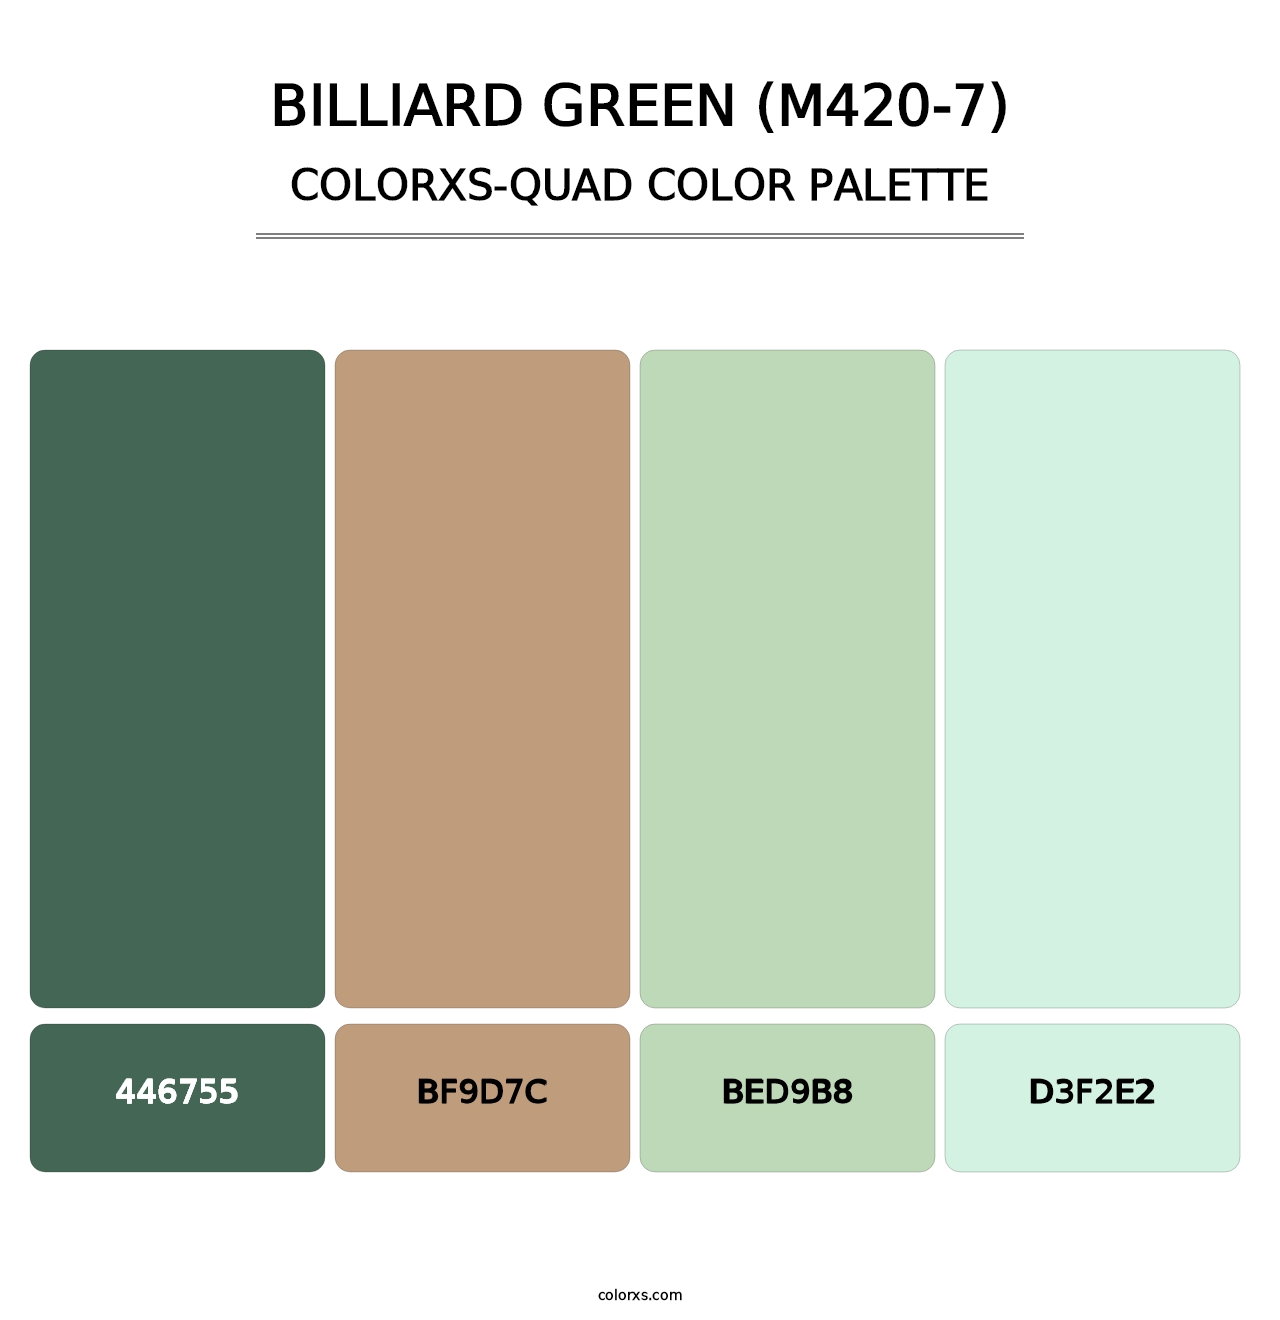 Billiard Green (M420-7) - Colorxs Quad Palette